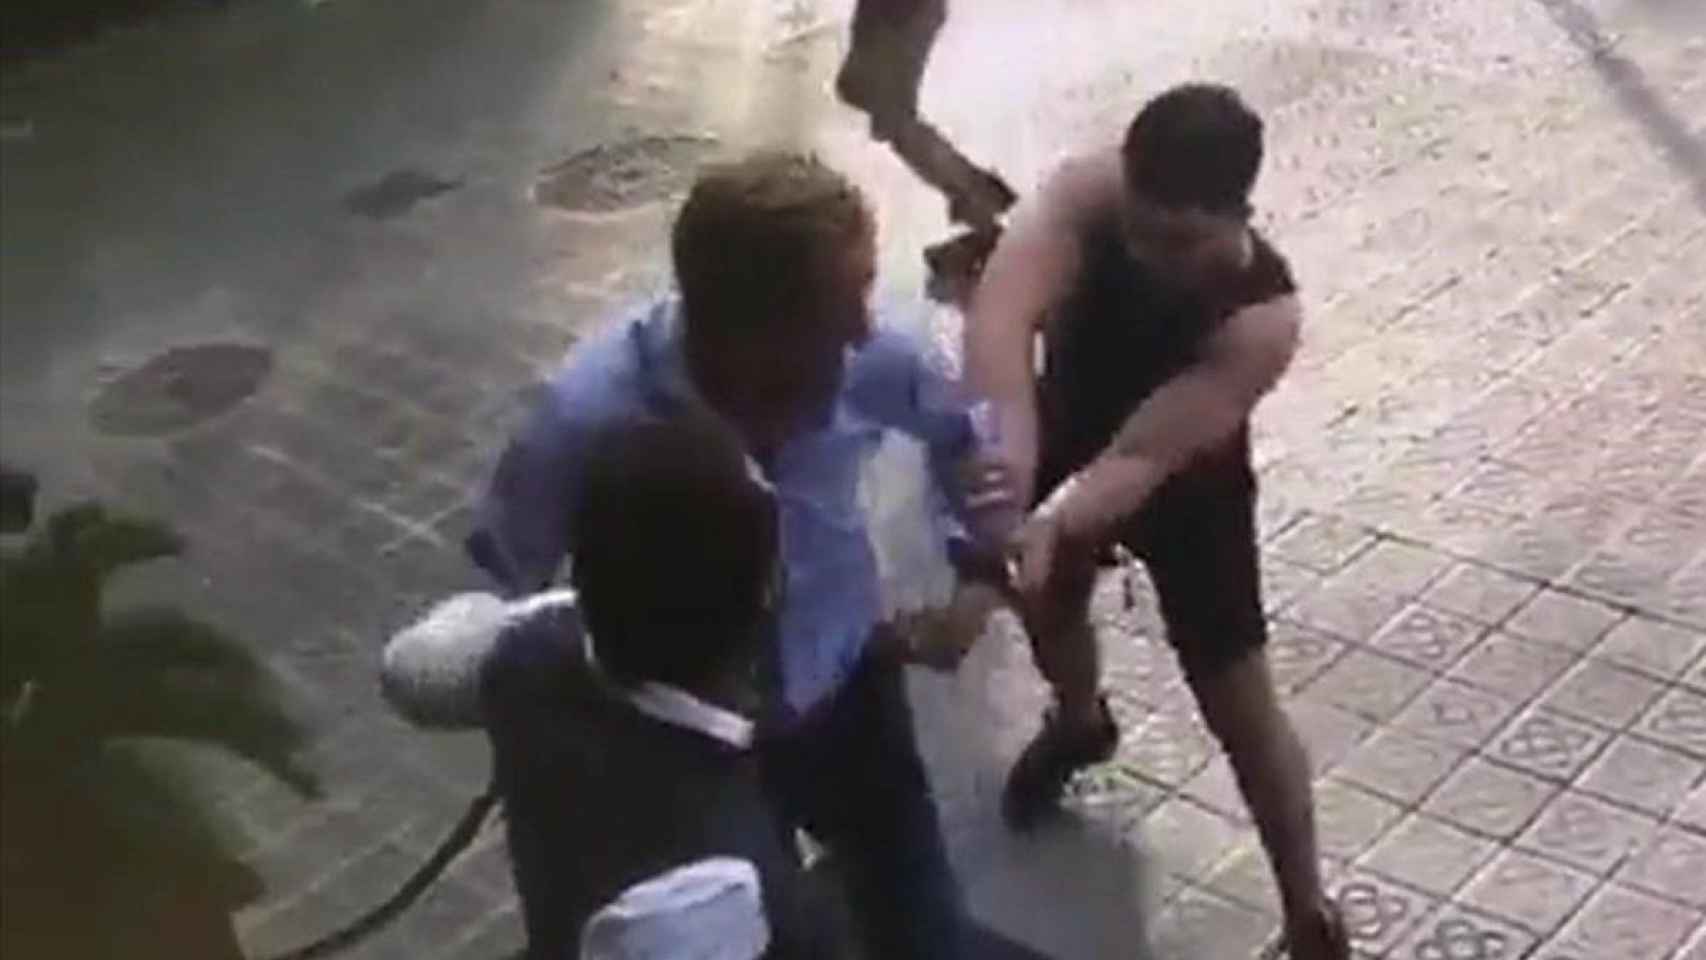 Dos ladrones intentan robar a una persona en plena calle barcelonesa